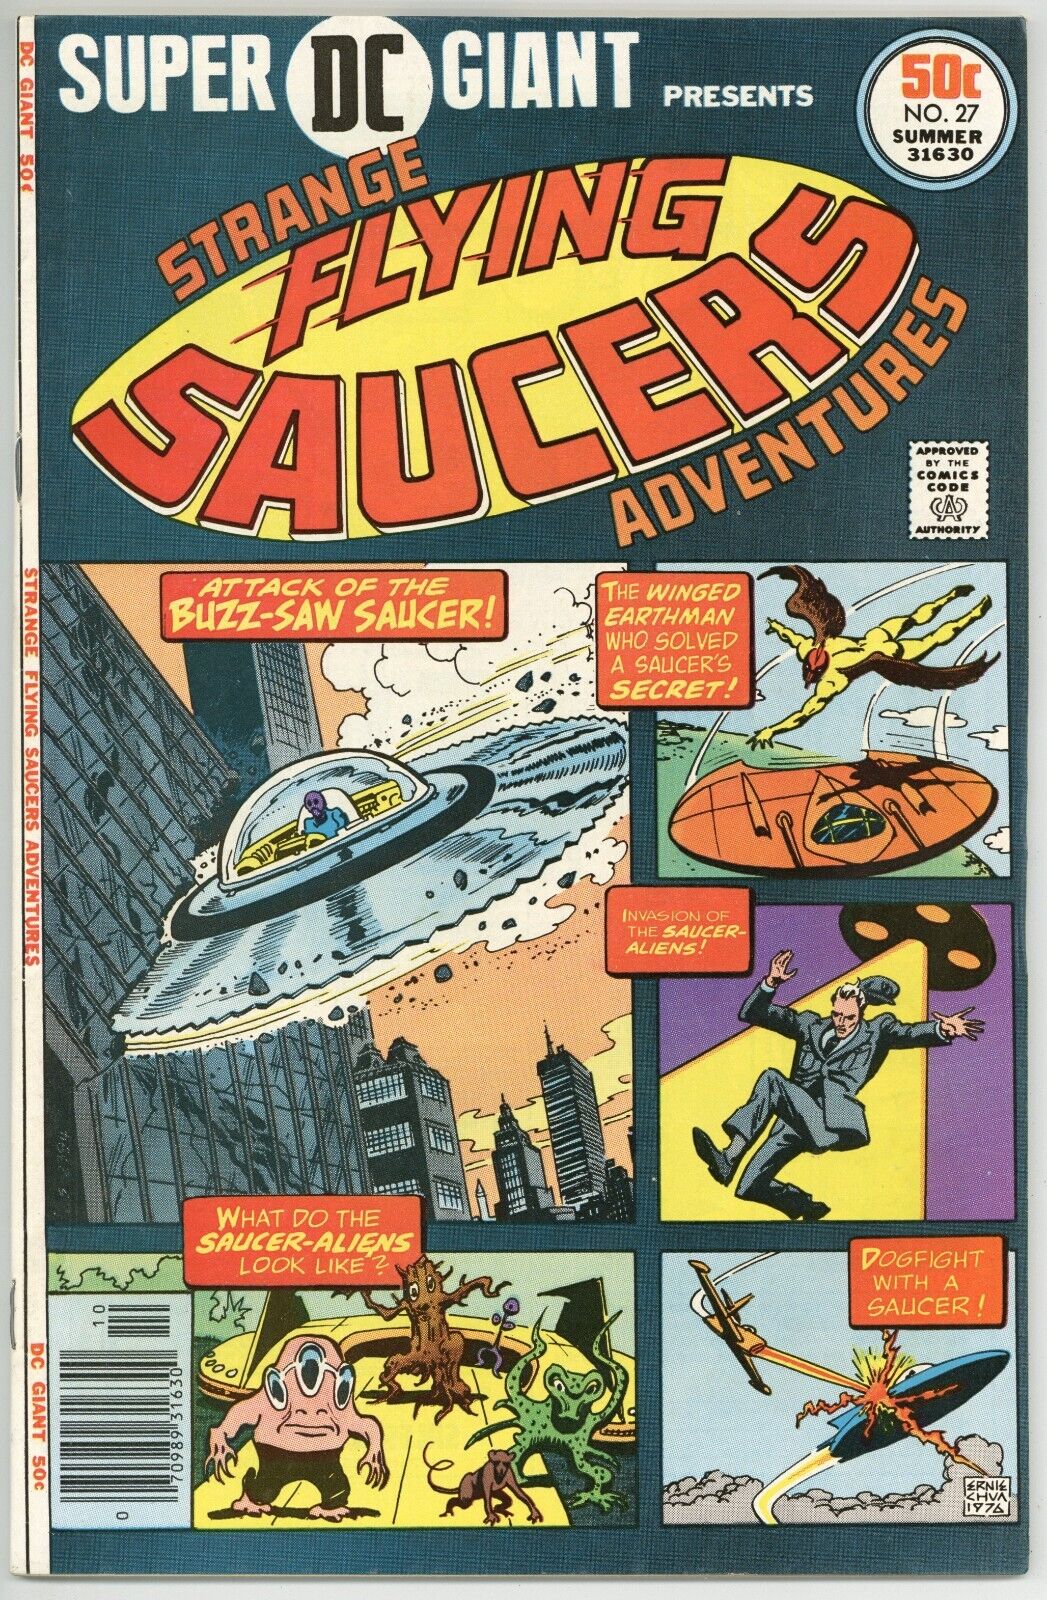 Super DC Giant Presents Strange Flying Saucers #27 VG/F (DC 1976)